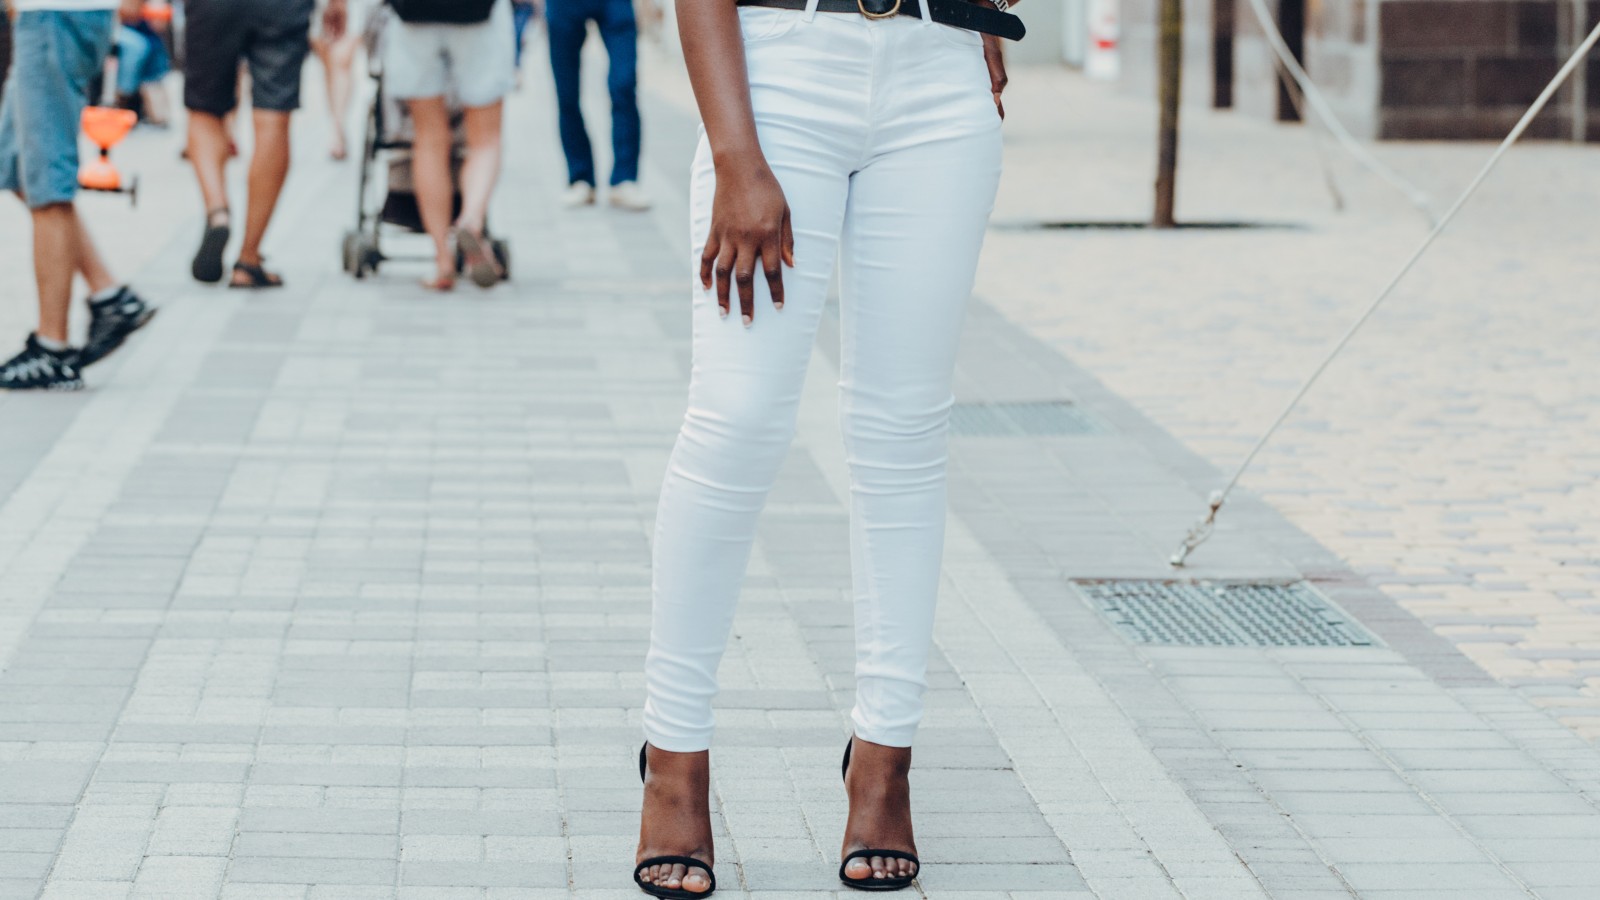 flattering white jeans